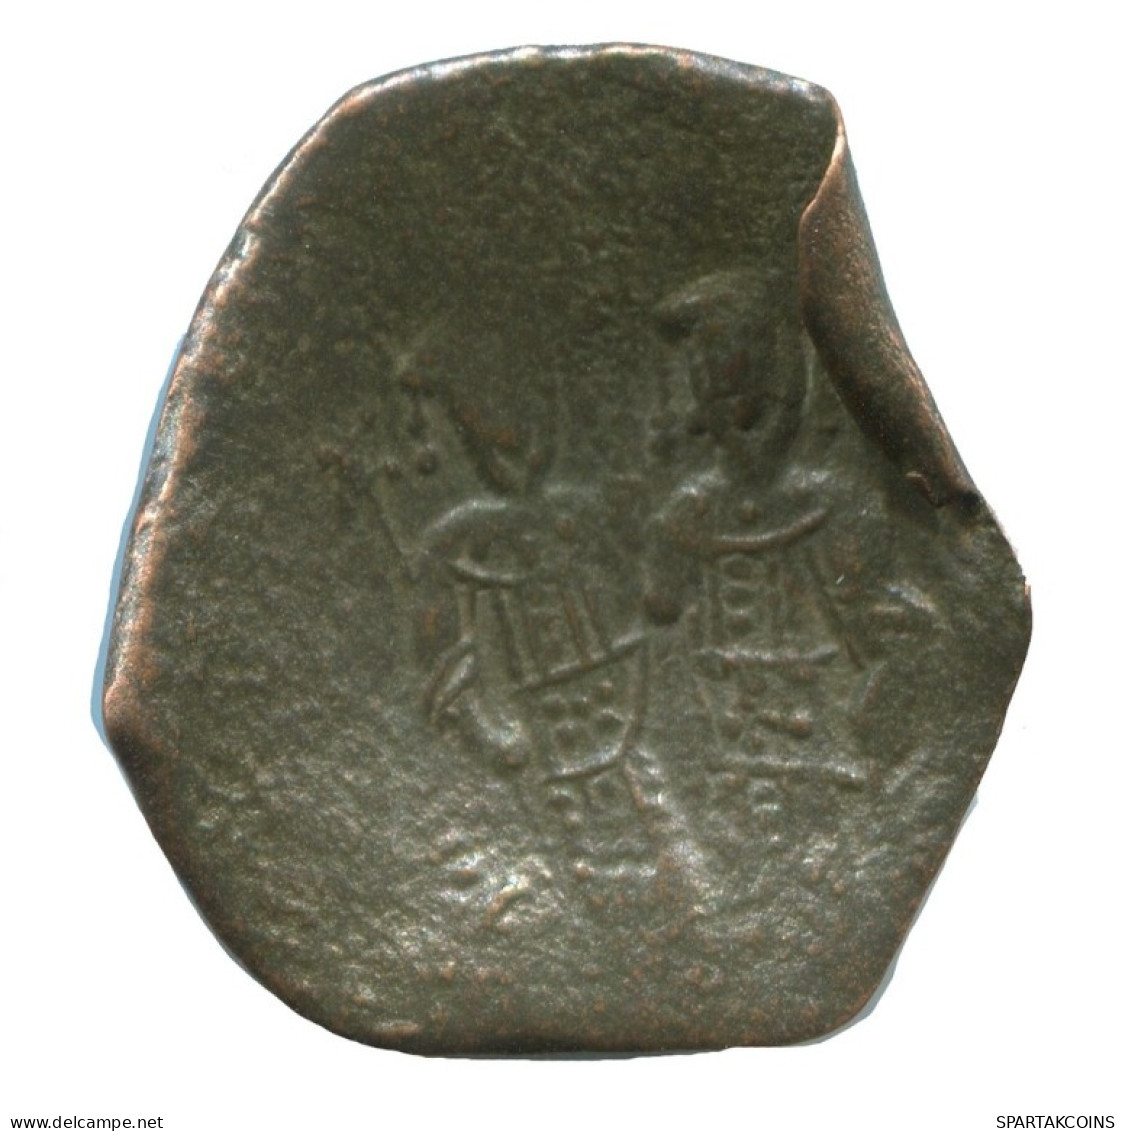 ALEXIOS III ANGELOS ASPRON TRACHY BILLON BYZANTINE Coin 2g/24mm #AB462.9.U.A - Byzantine